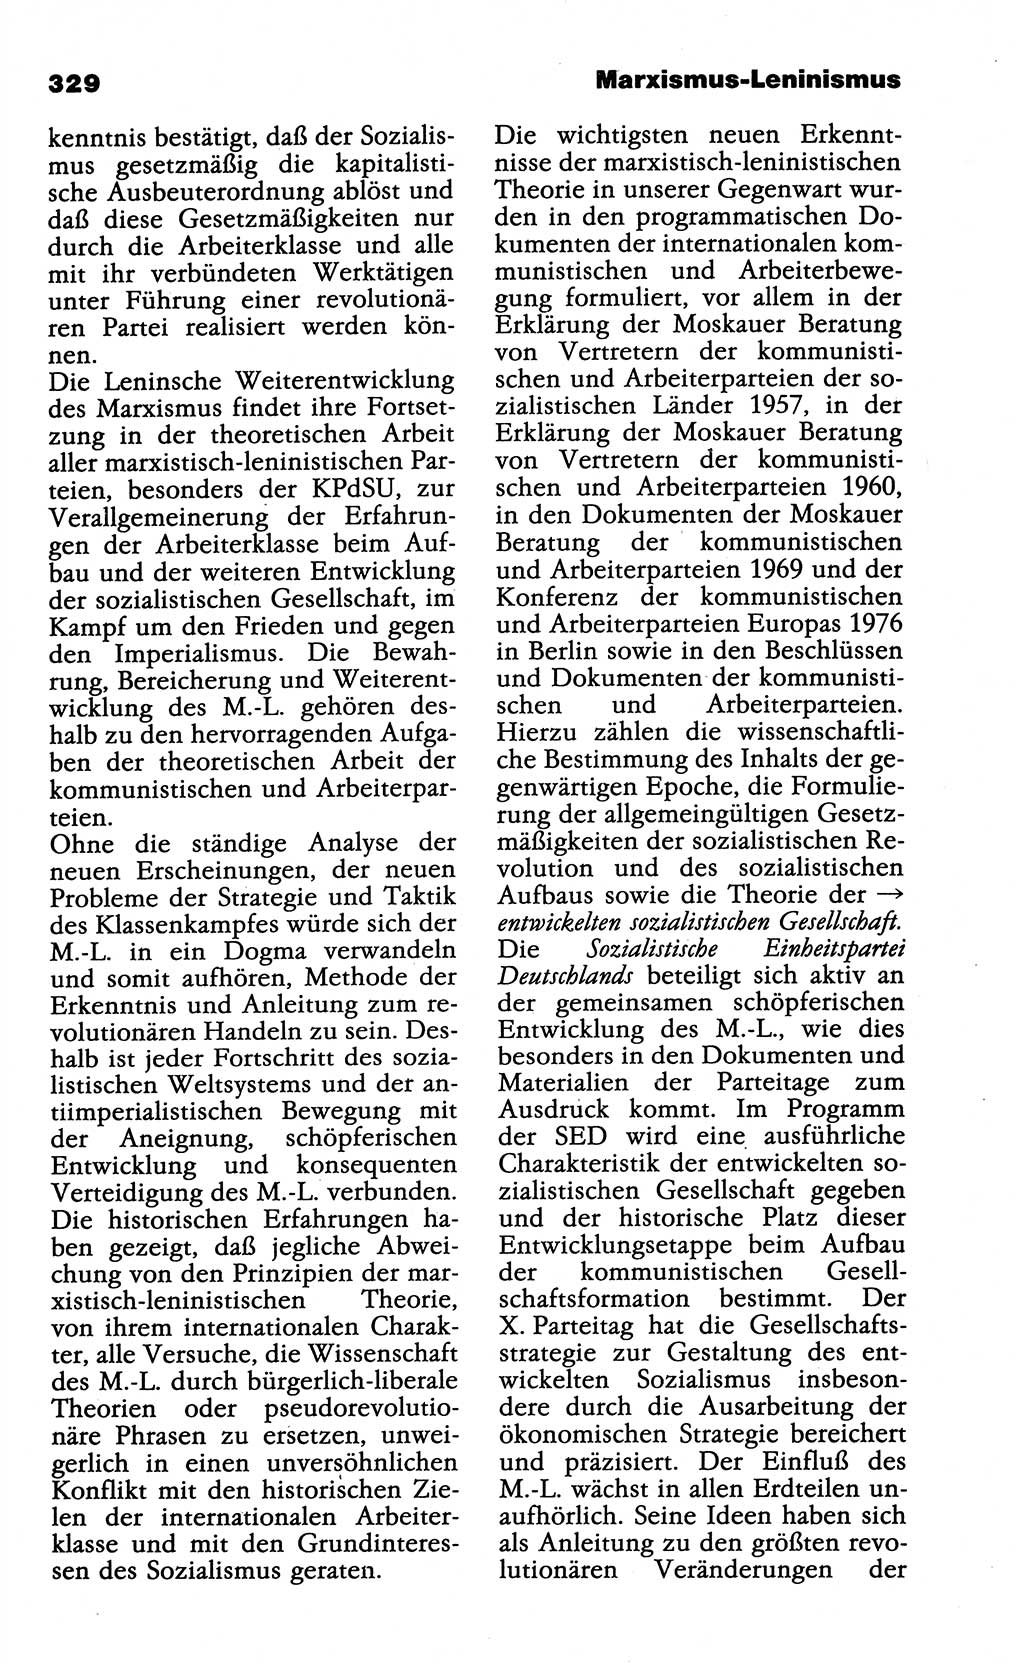 Wörterbuch der marxistisch-leninistischen Philosophie [Deutsche Demokratische Republik (DDR)] 1985, Seite 329 (Wb. ML Phil. DDR 1985, S. 329)